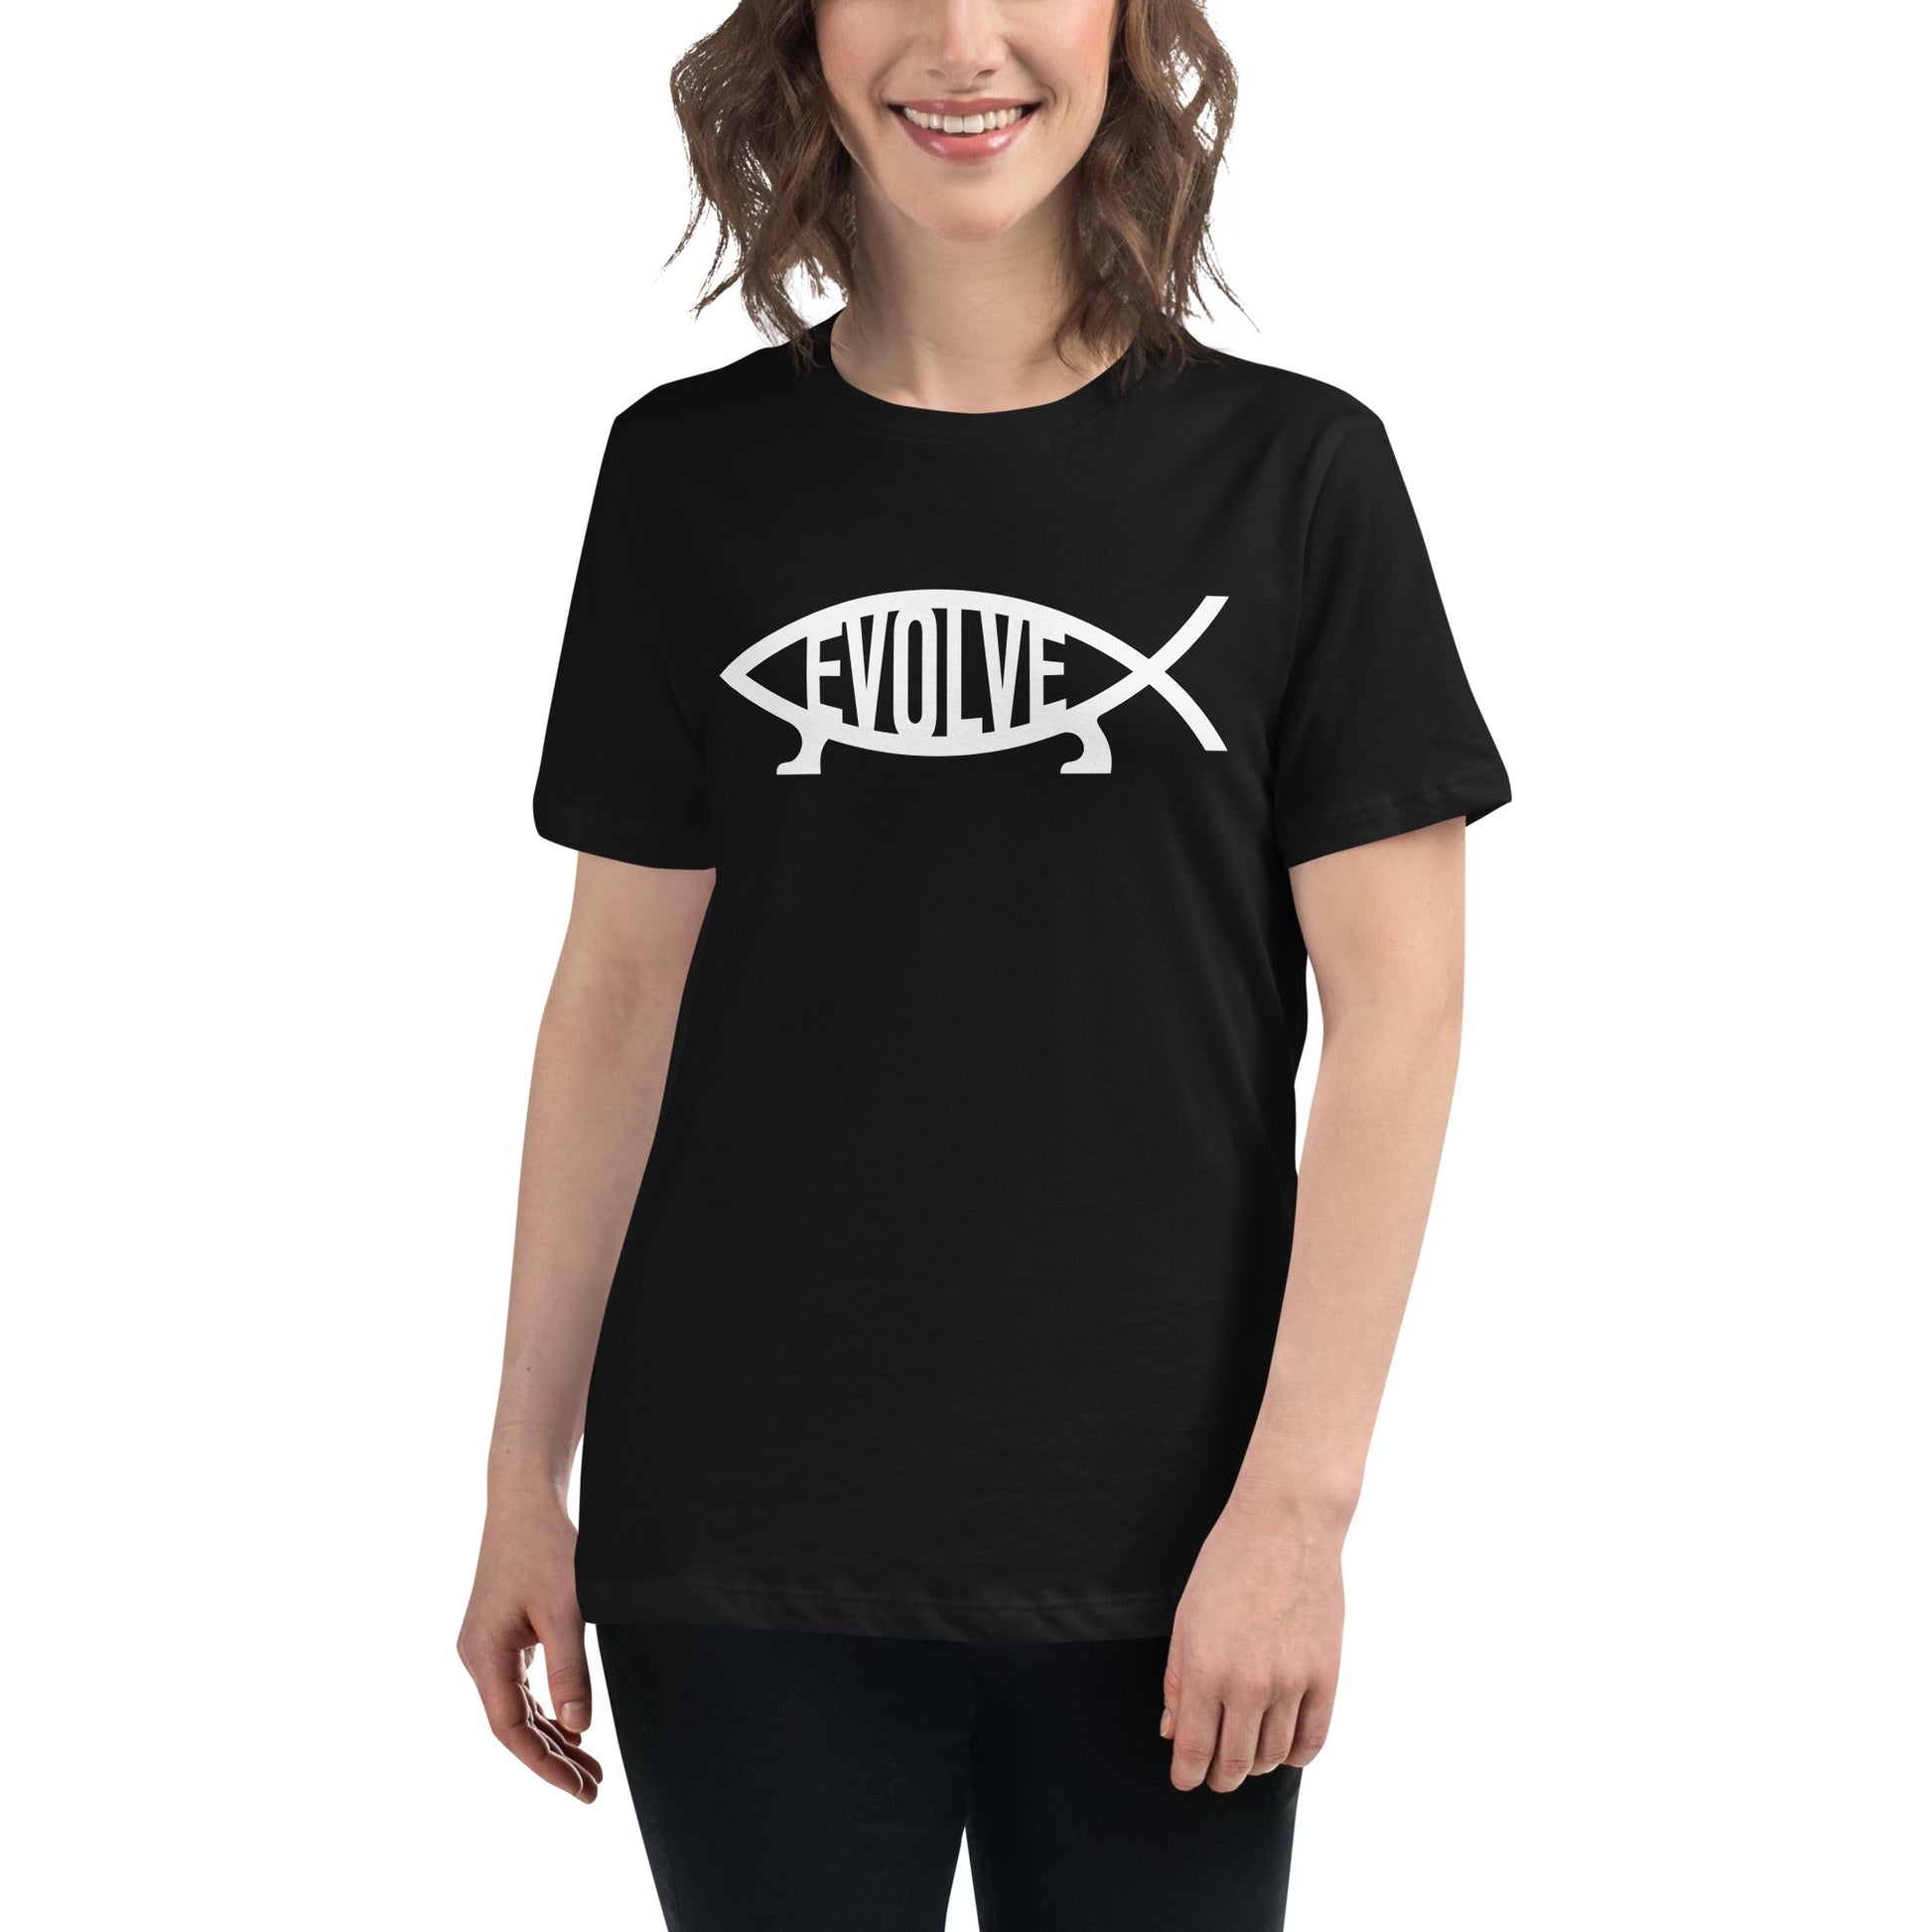 Darwin - Evolve - Women's T-Shirt